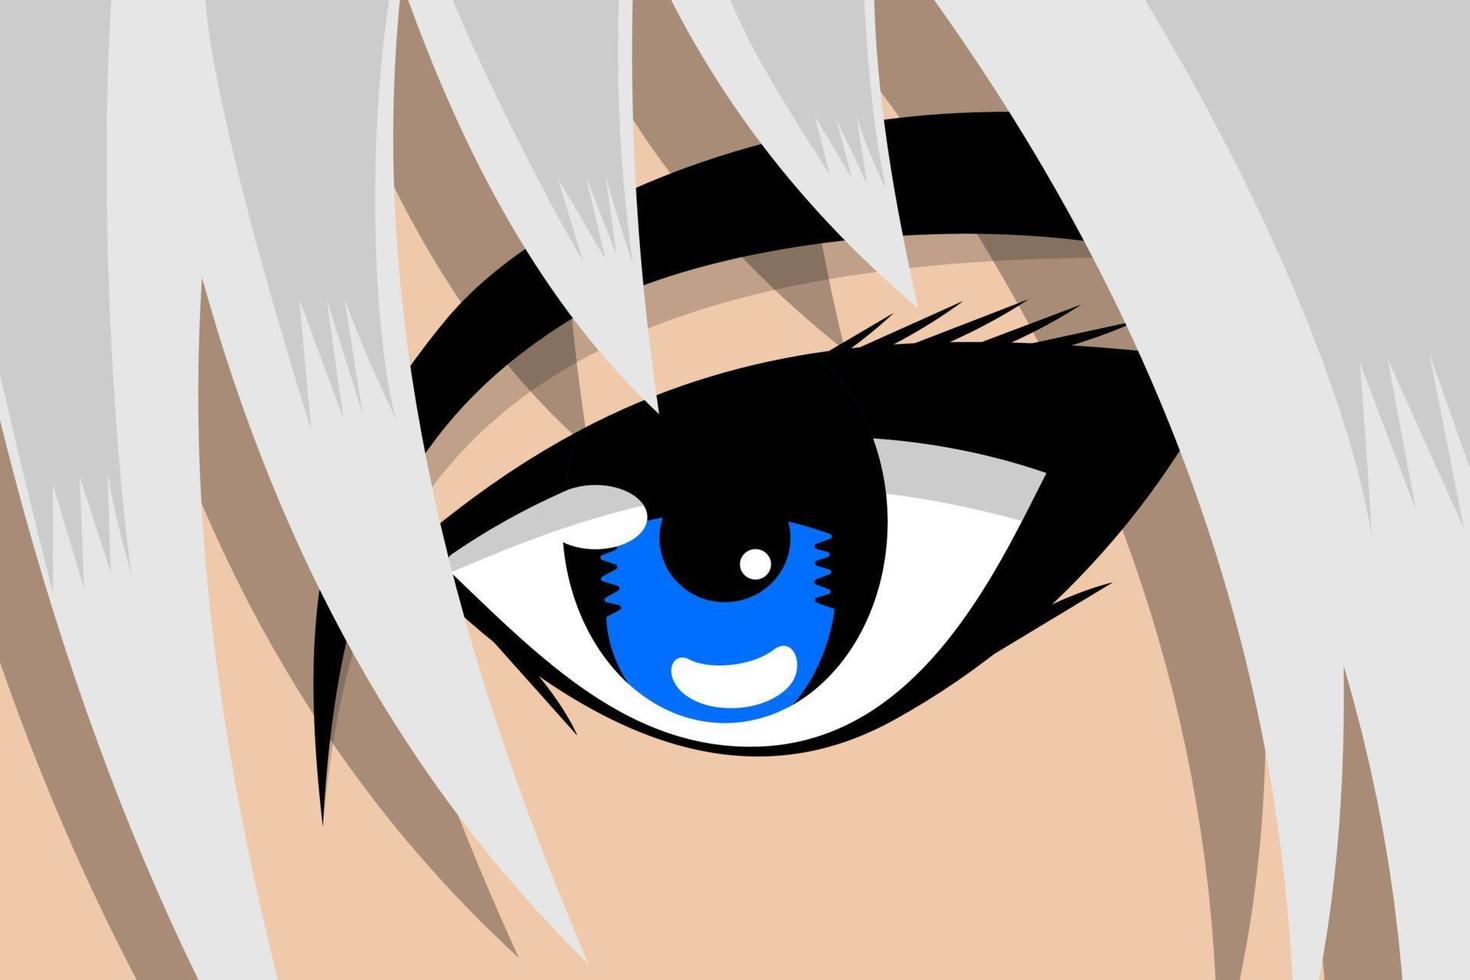 tira cómica de anime cara bonita de niño o niña con ojos azules y cabello blanco. concepto de fondo de arte de héroe de libro de historietas de manga. ilustración vectorial de aspecto de dibujos animados eps vector